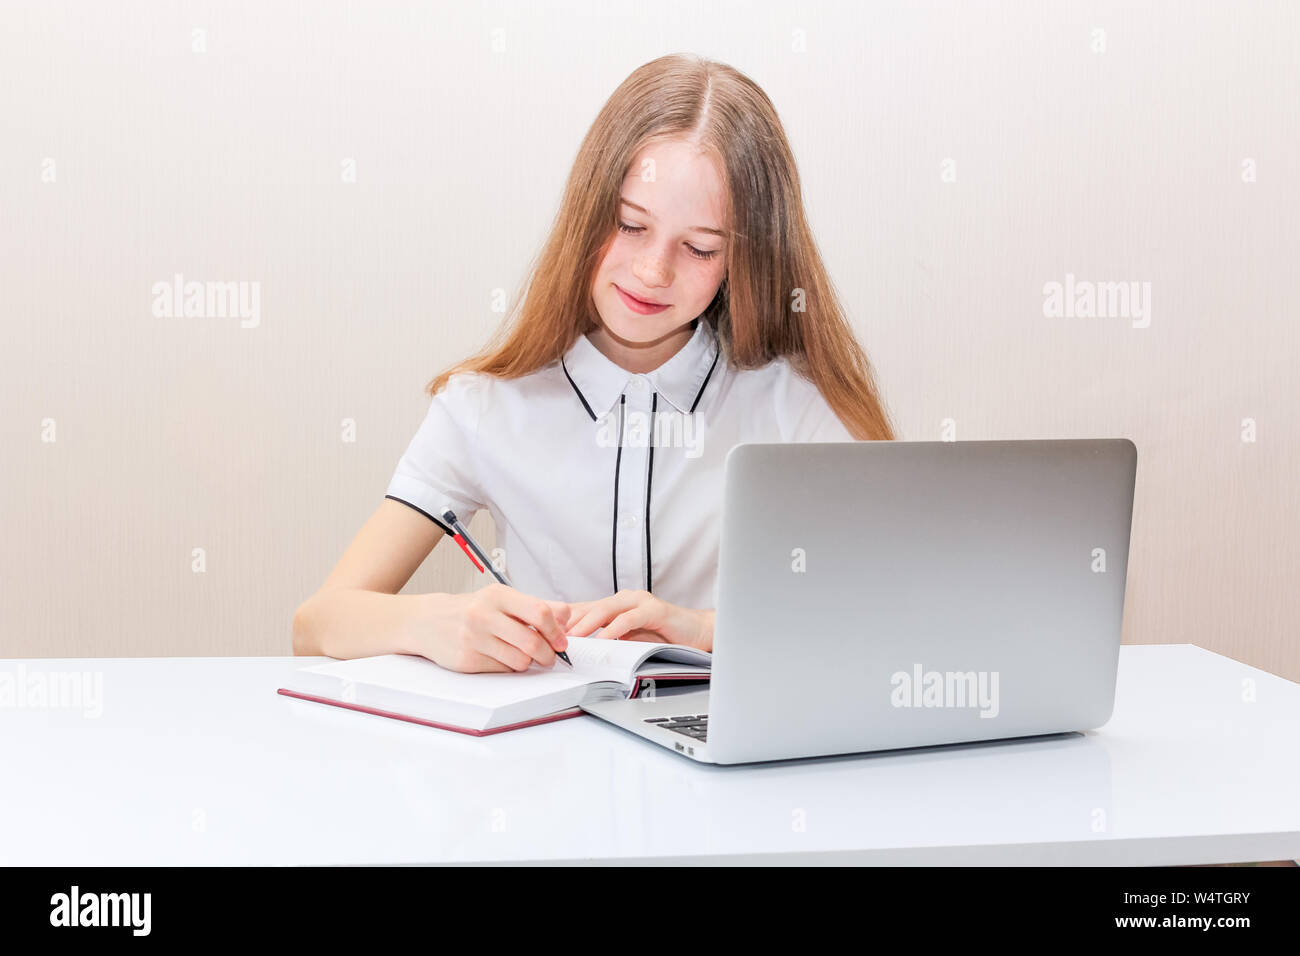 Junges Mädchen mit blonden Haaren in einer weißen Bluse sitzt am Tisch und schaut in den Laptop monitor Stockfoto